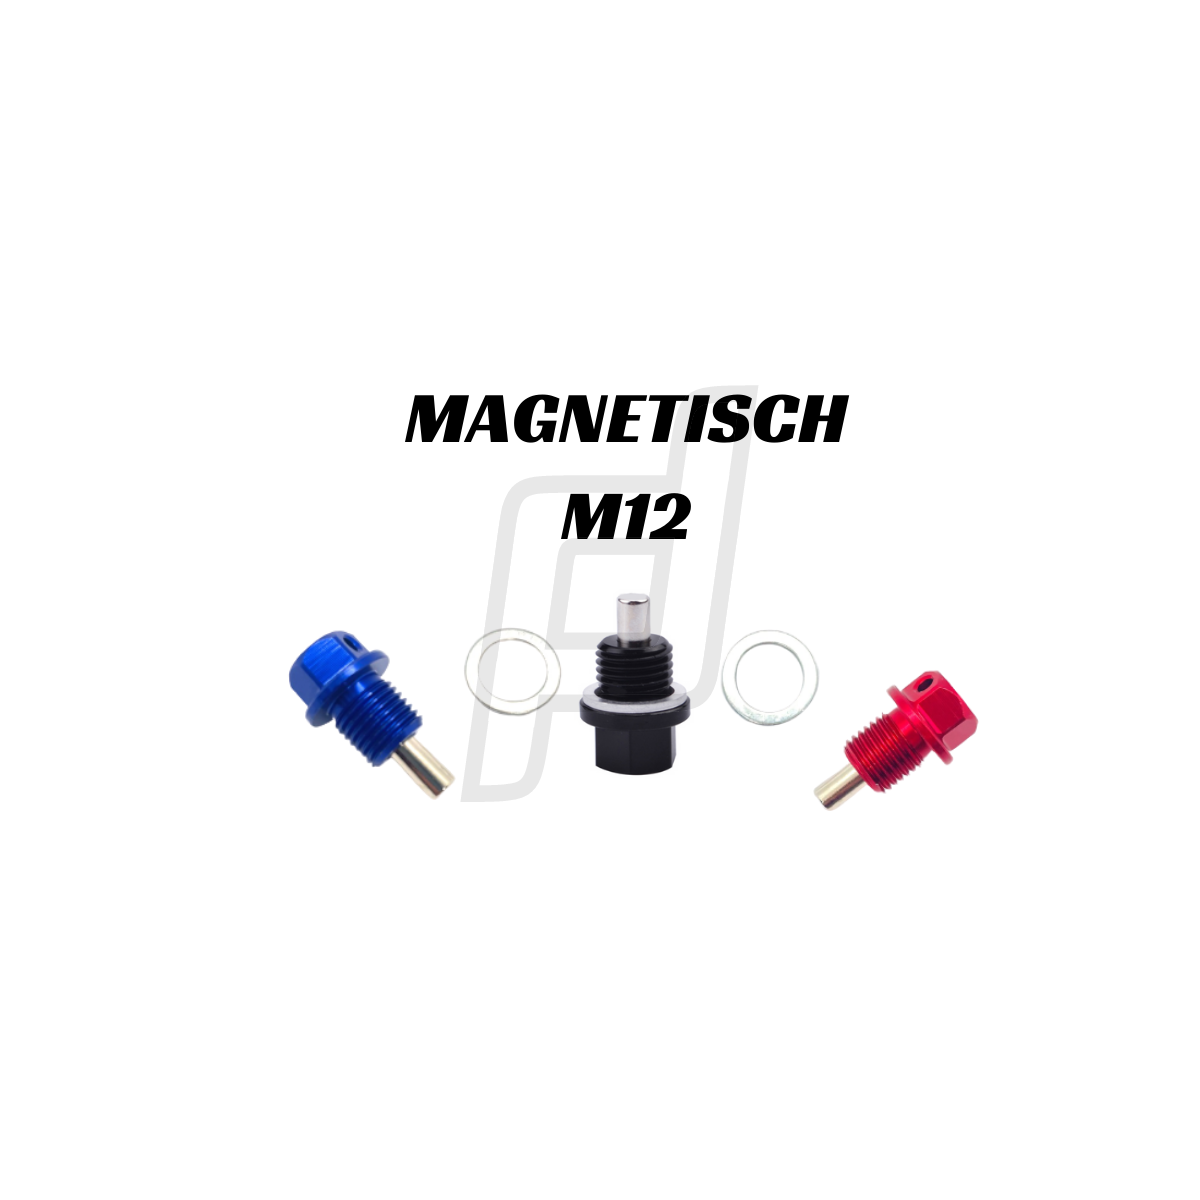 Öl-Ablassschraube mit Magnet BMW M12 x1.5 - NIPPON SUPPLY